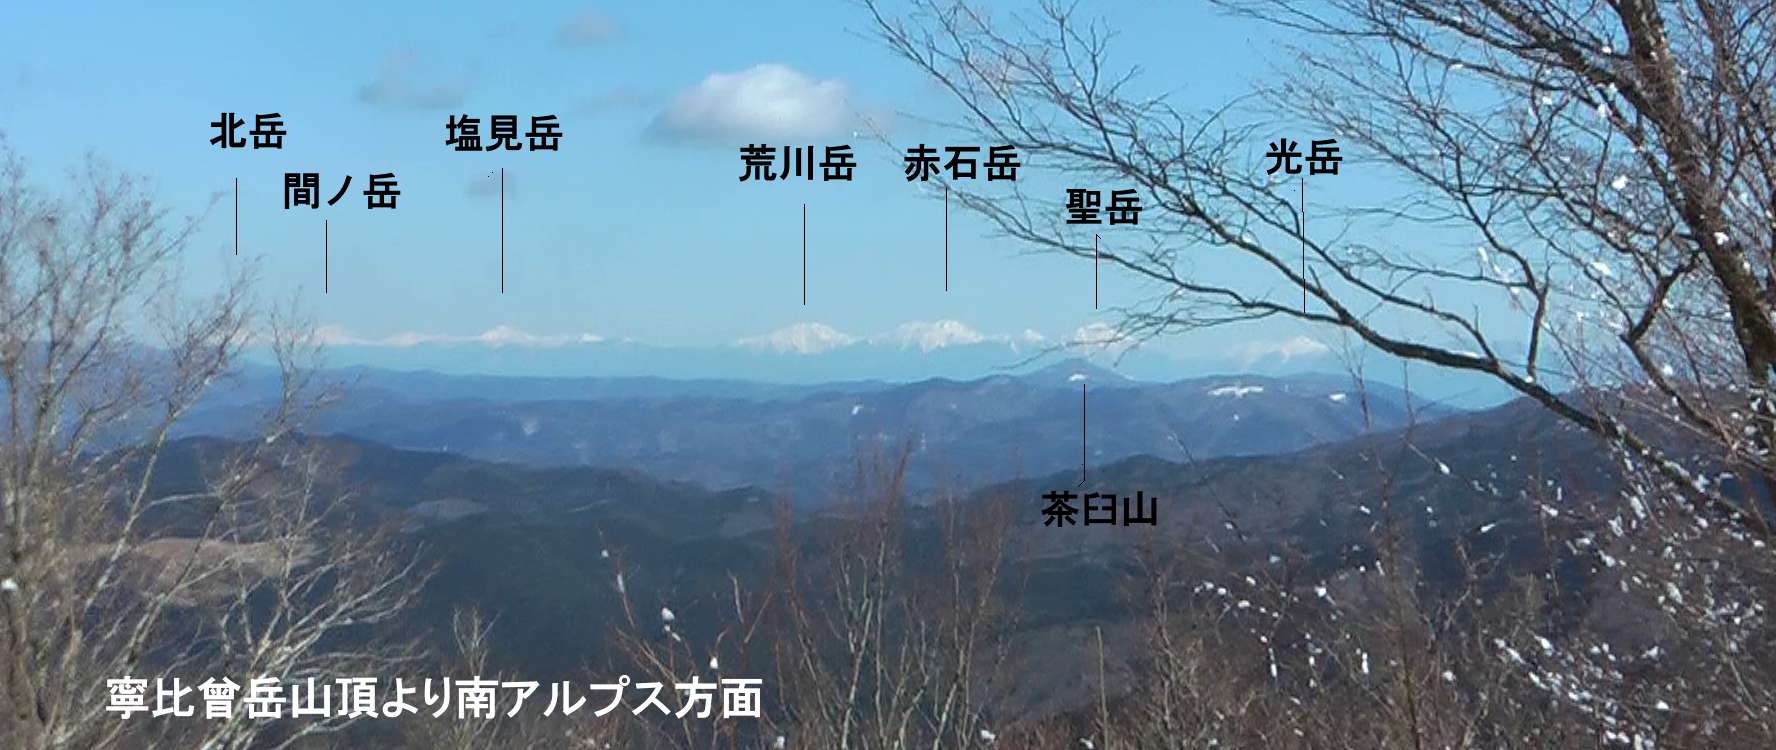 富士山の見える山 寧比曾岳 田園 里山 野鳥そしてアルプスの山々